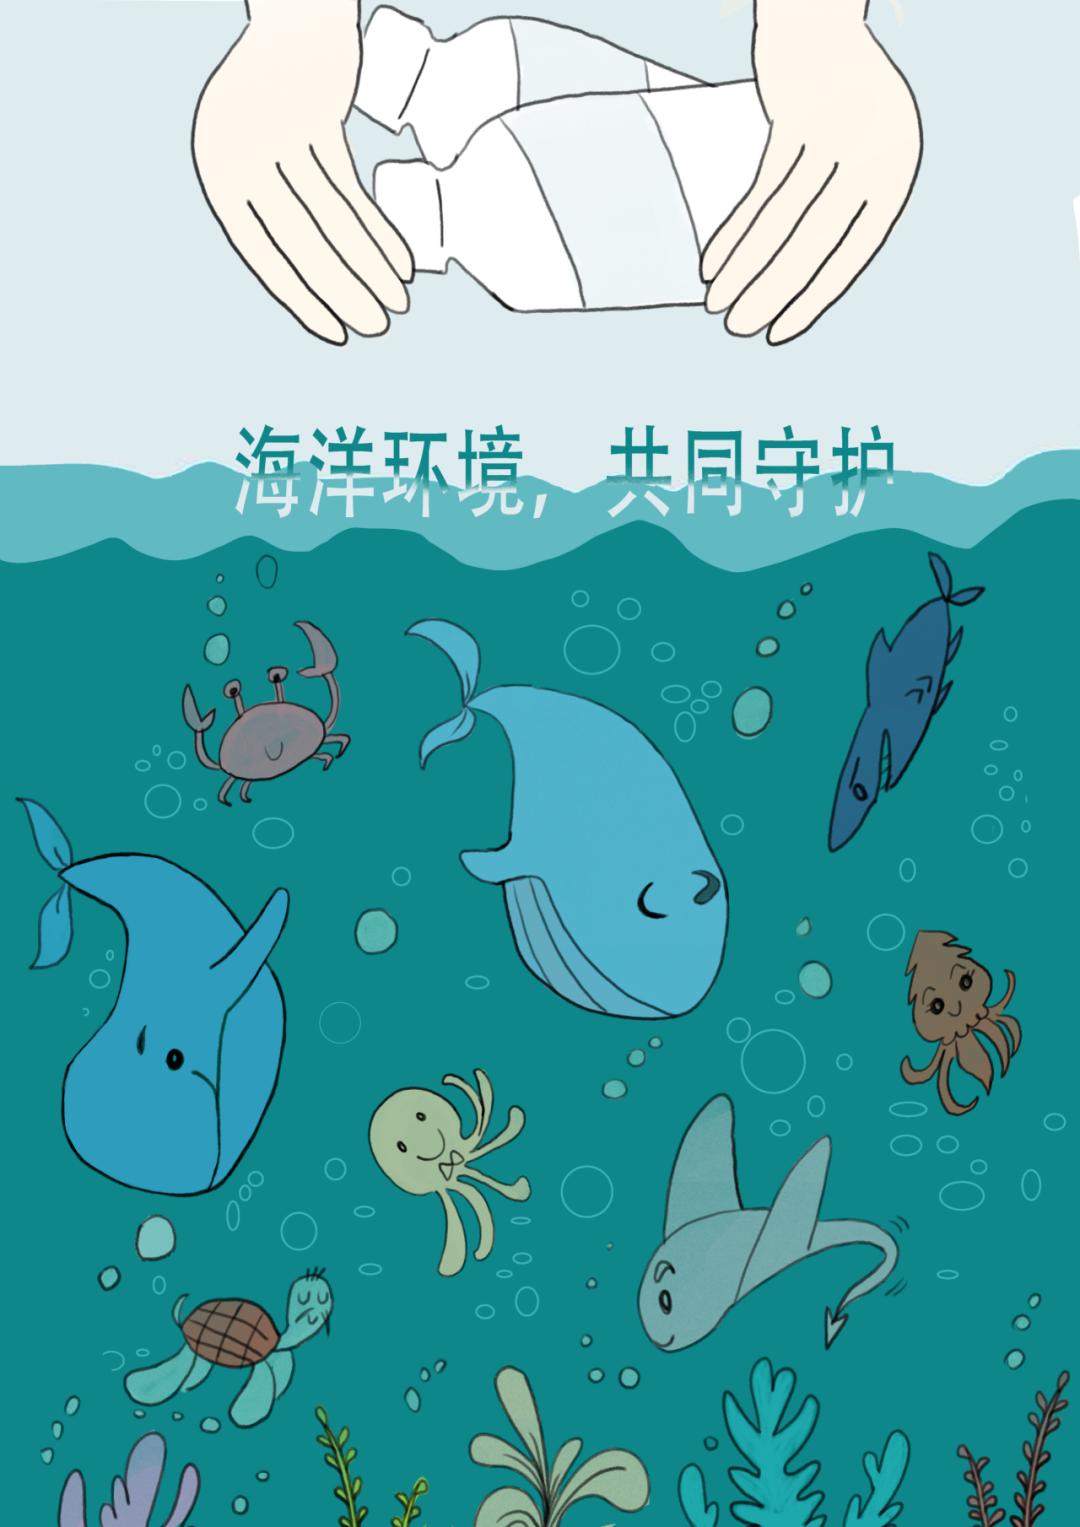 海洋守护者青少年海报设计活动优秀作品展三